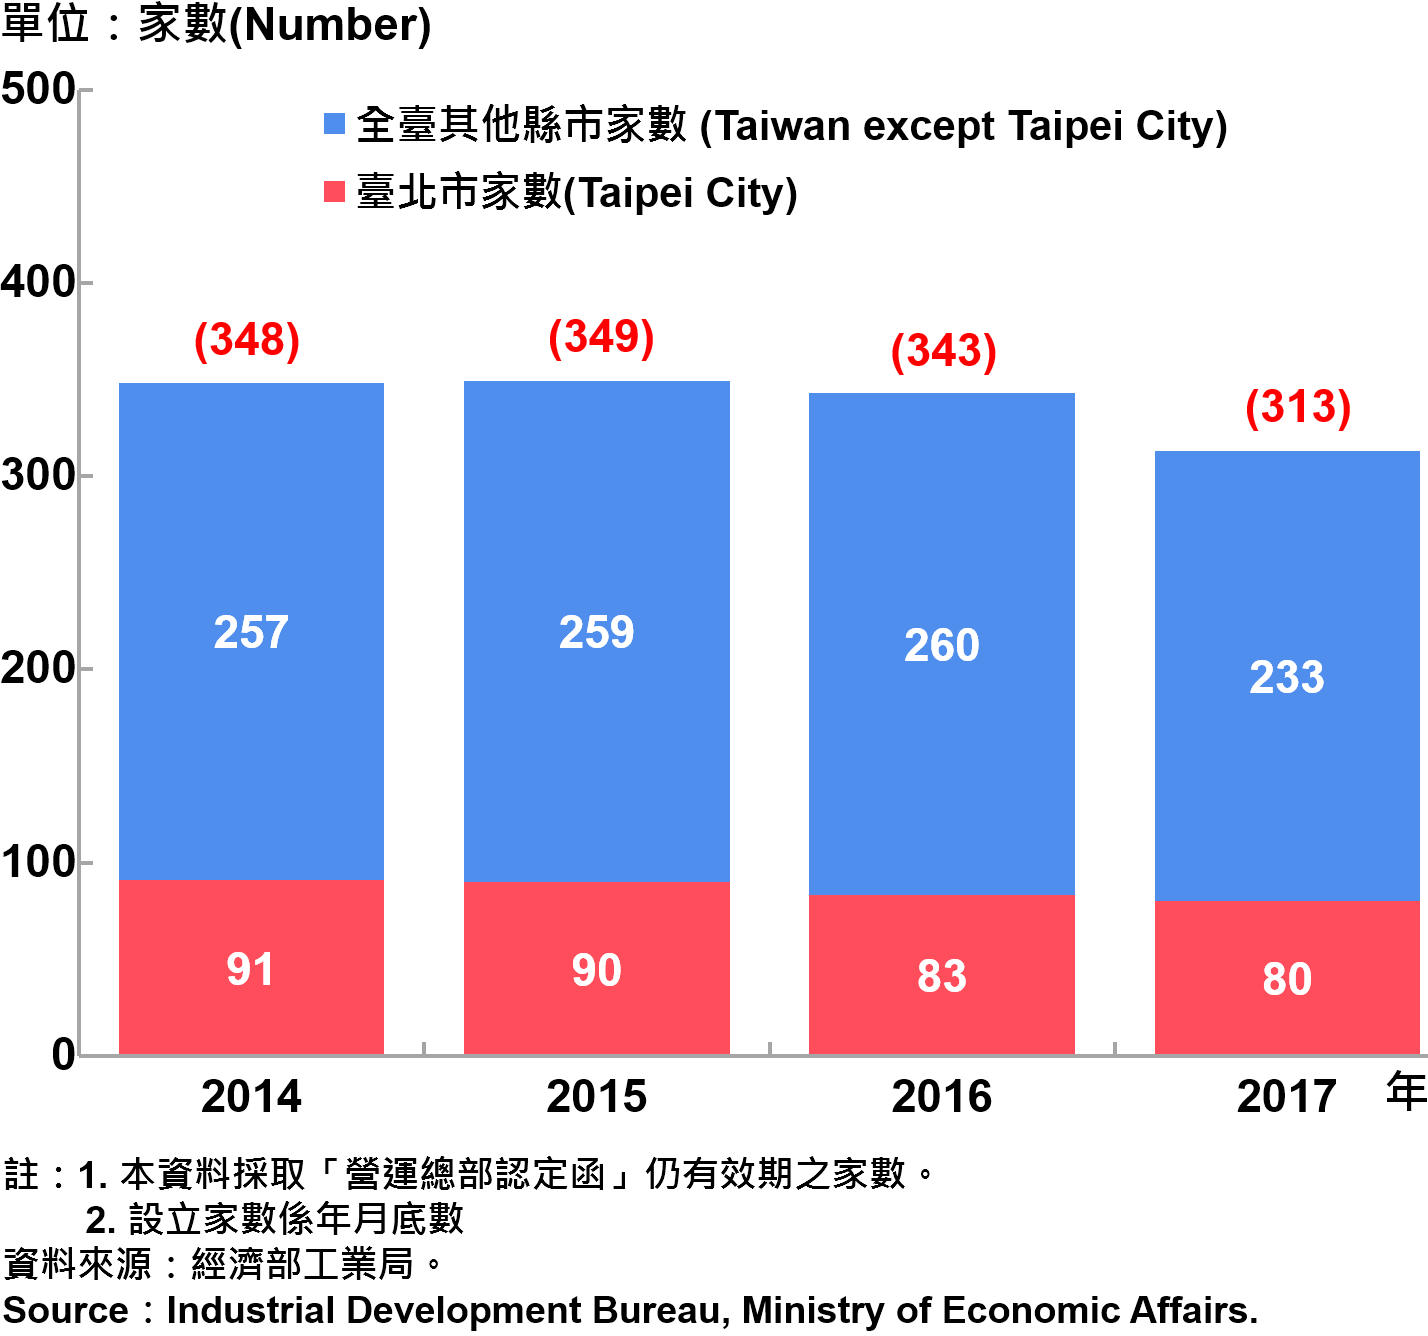 圖15、臺北市企業營運總部之設立家數—2017 Number of Established Enterprise Business Headquarters in Taipei City—2017